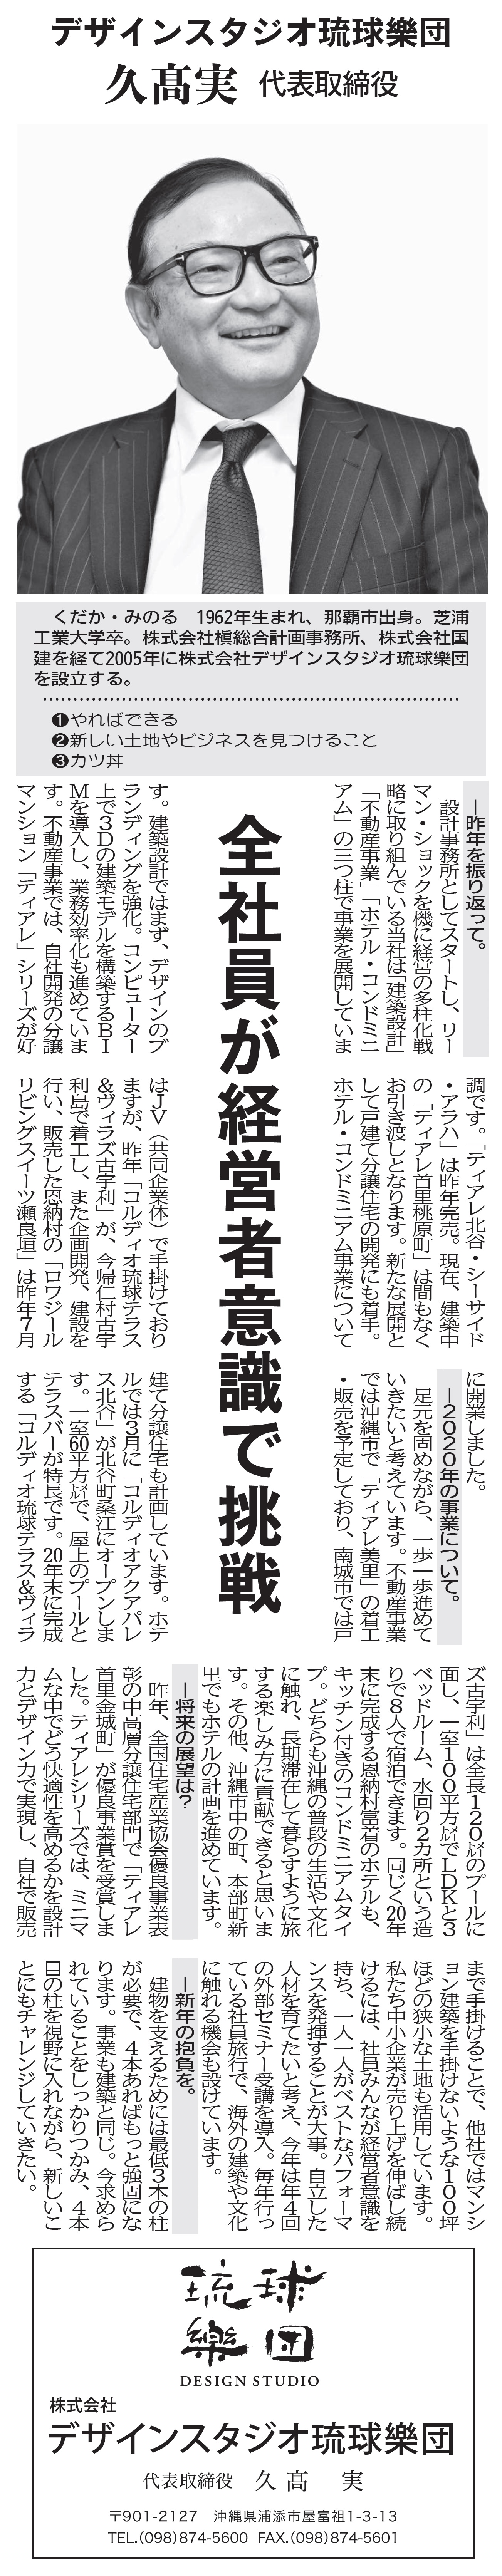 沖縄タイムス新年号へ弊社社長のインタビュー記事が掲載されました